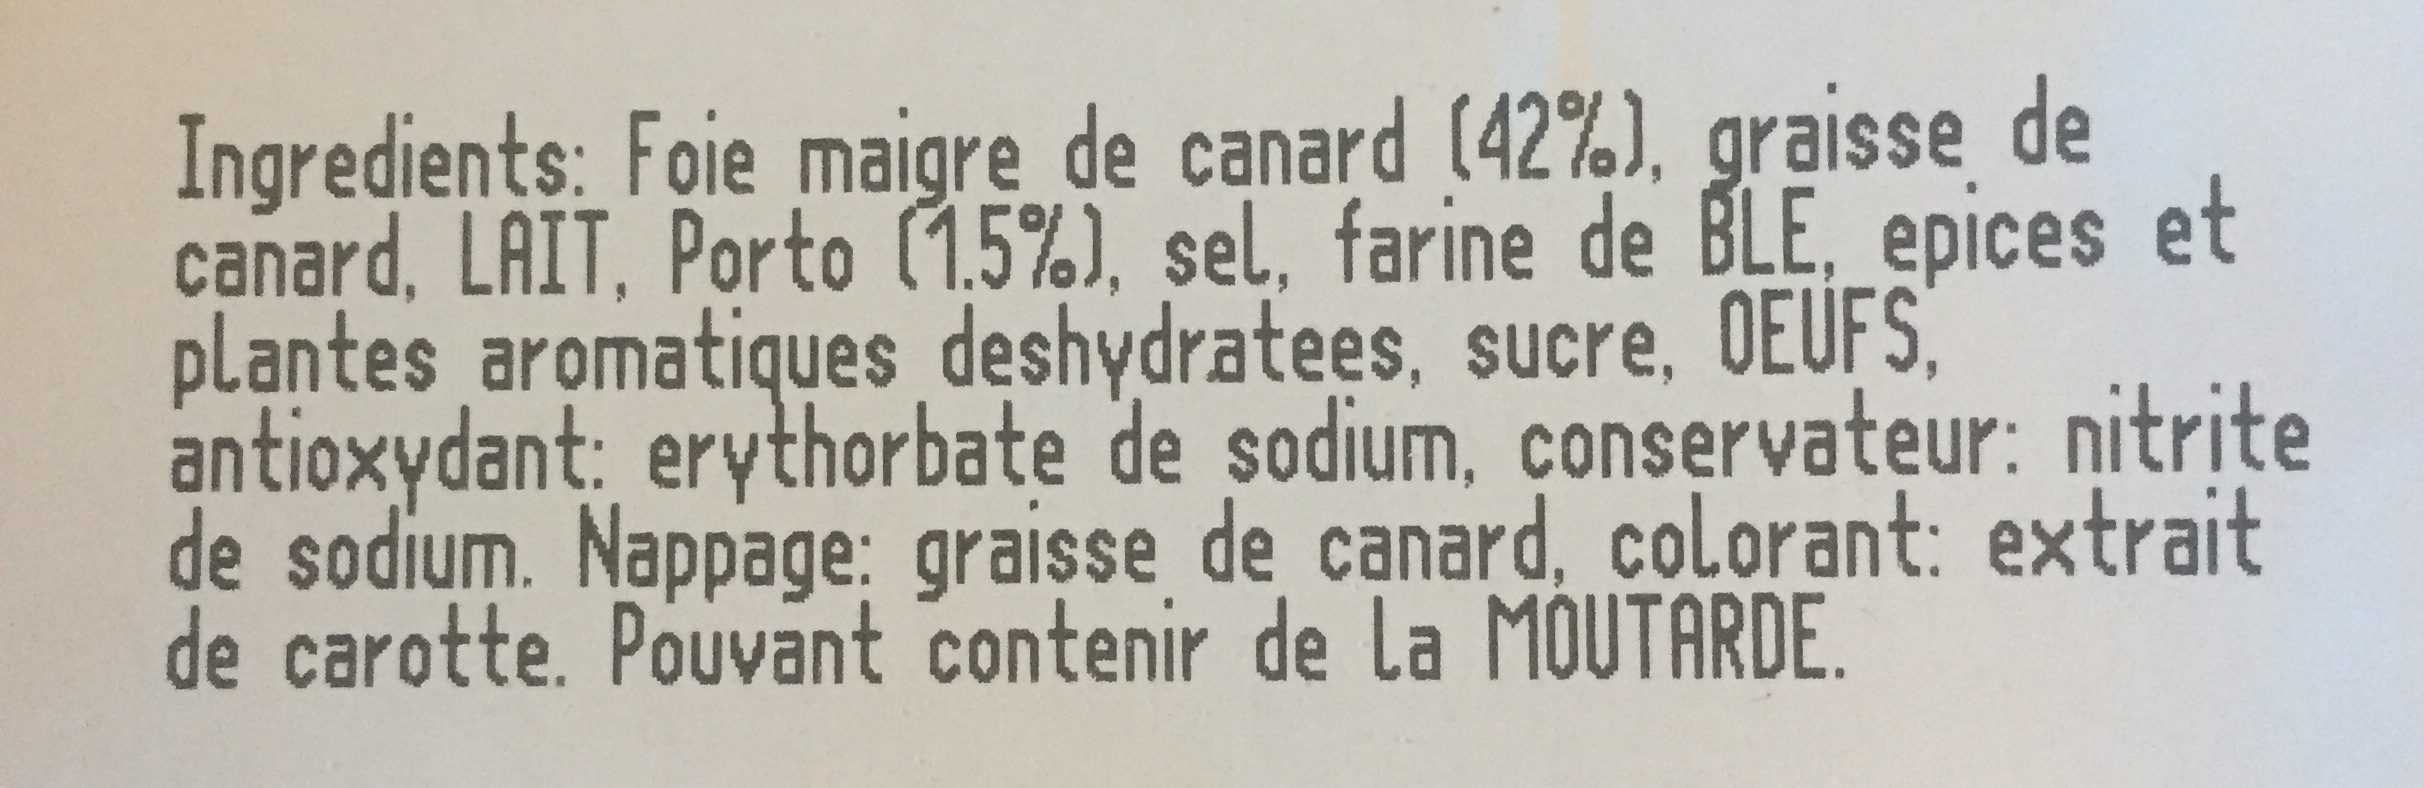 Mousse pur canard qualité supérieure - Ingredienser - fr